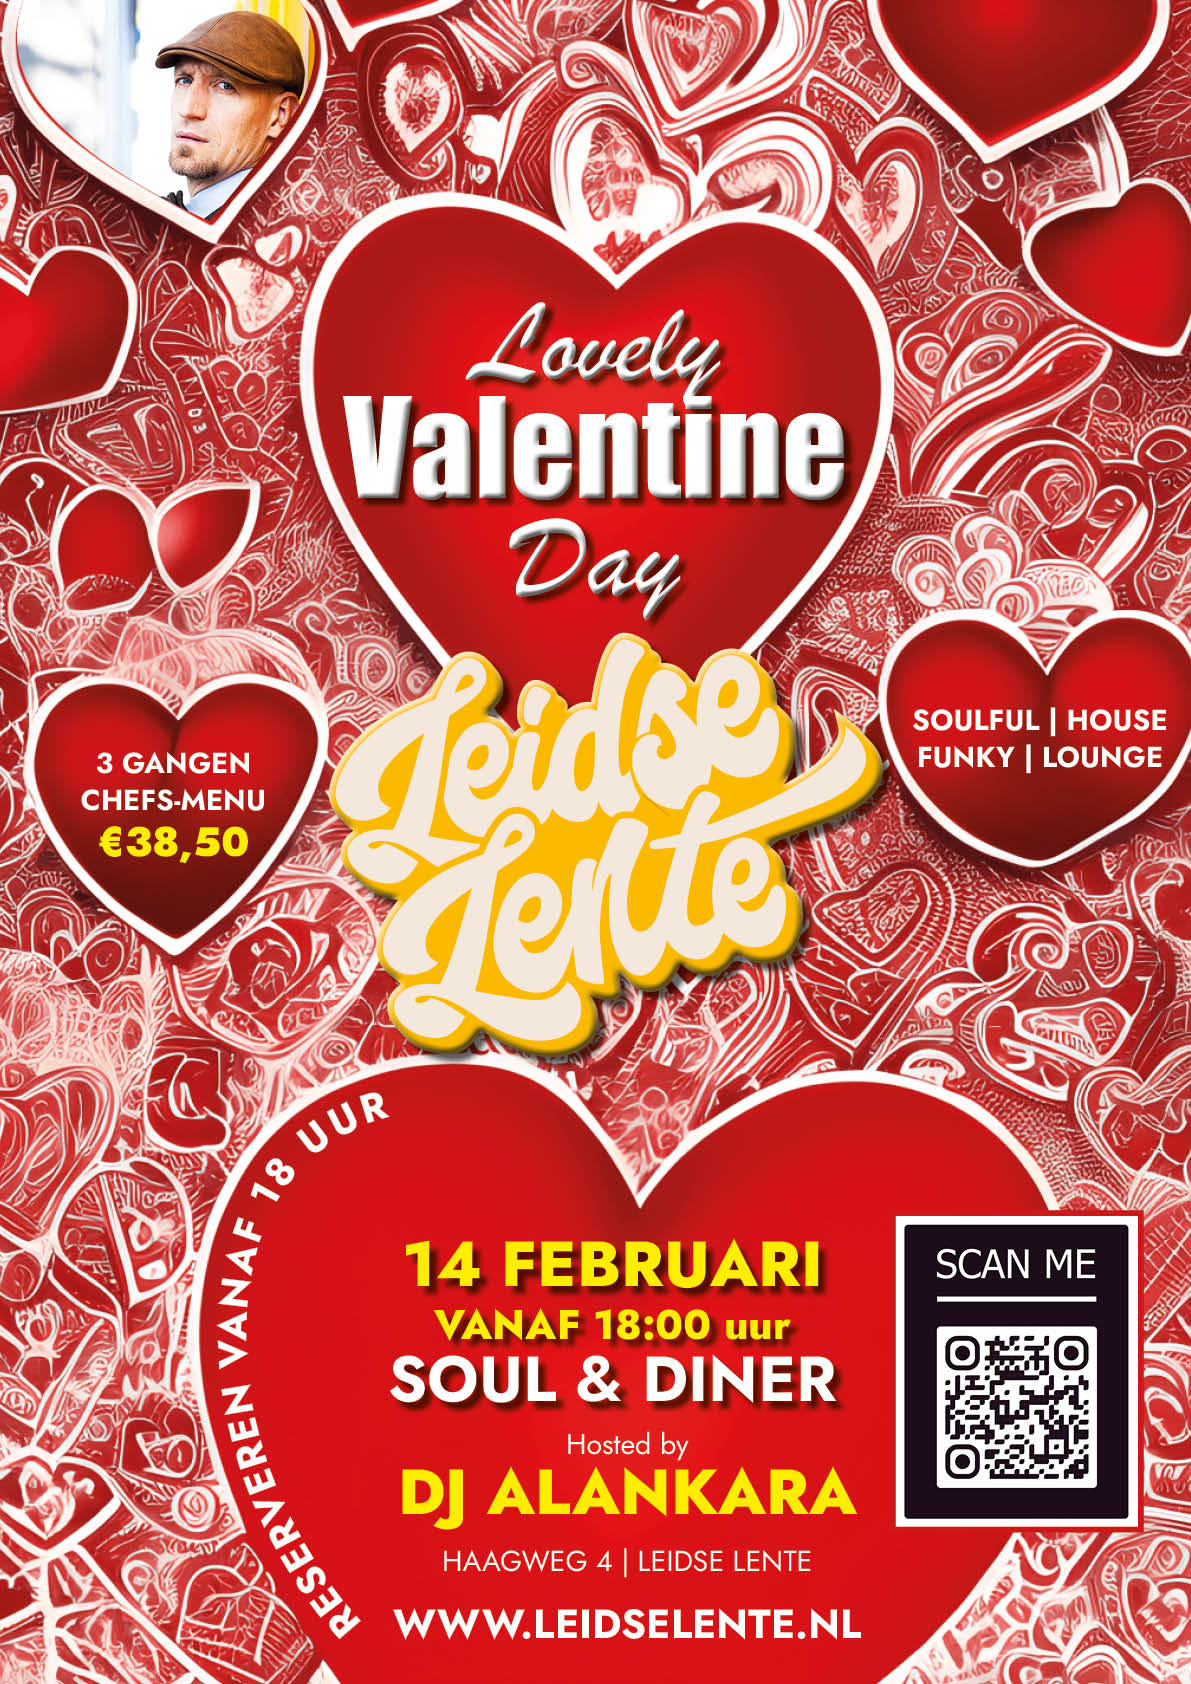 Ticket kopen voor evenement GECANCELD: Lovely Valentine Day Diner